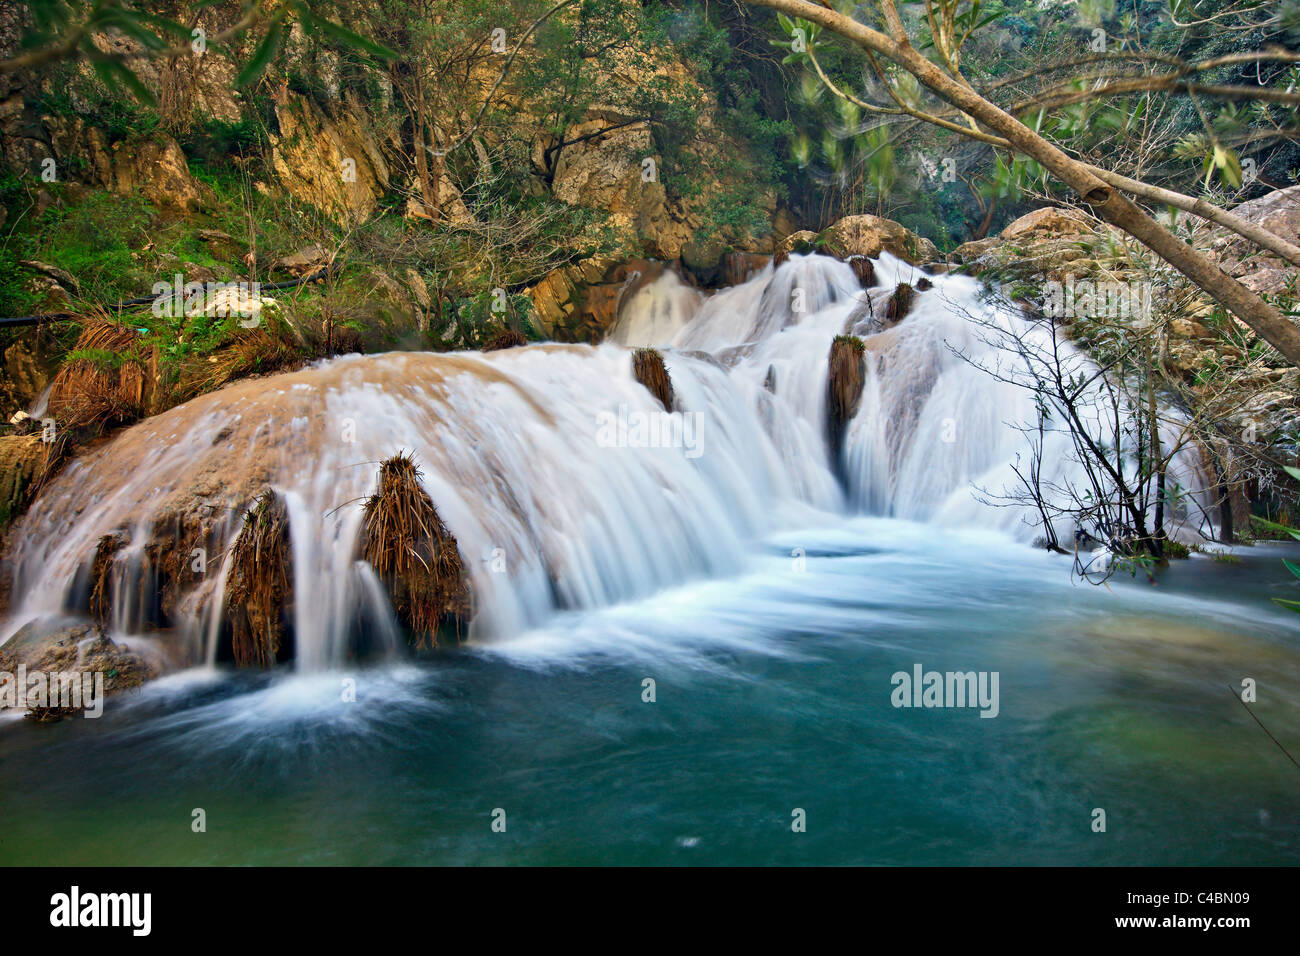 L'une des nombreuses chutes d'eau à Polylimnio, un lieu de beauté naturelle exceptionnelle à la préfecture de Messénie, Péloponnèse, Grèce Banque D'Images